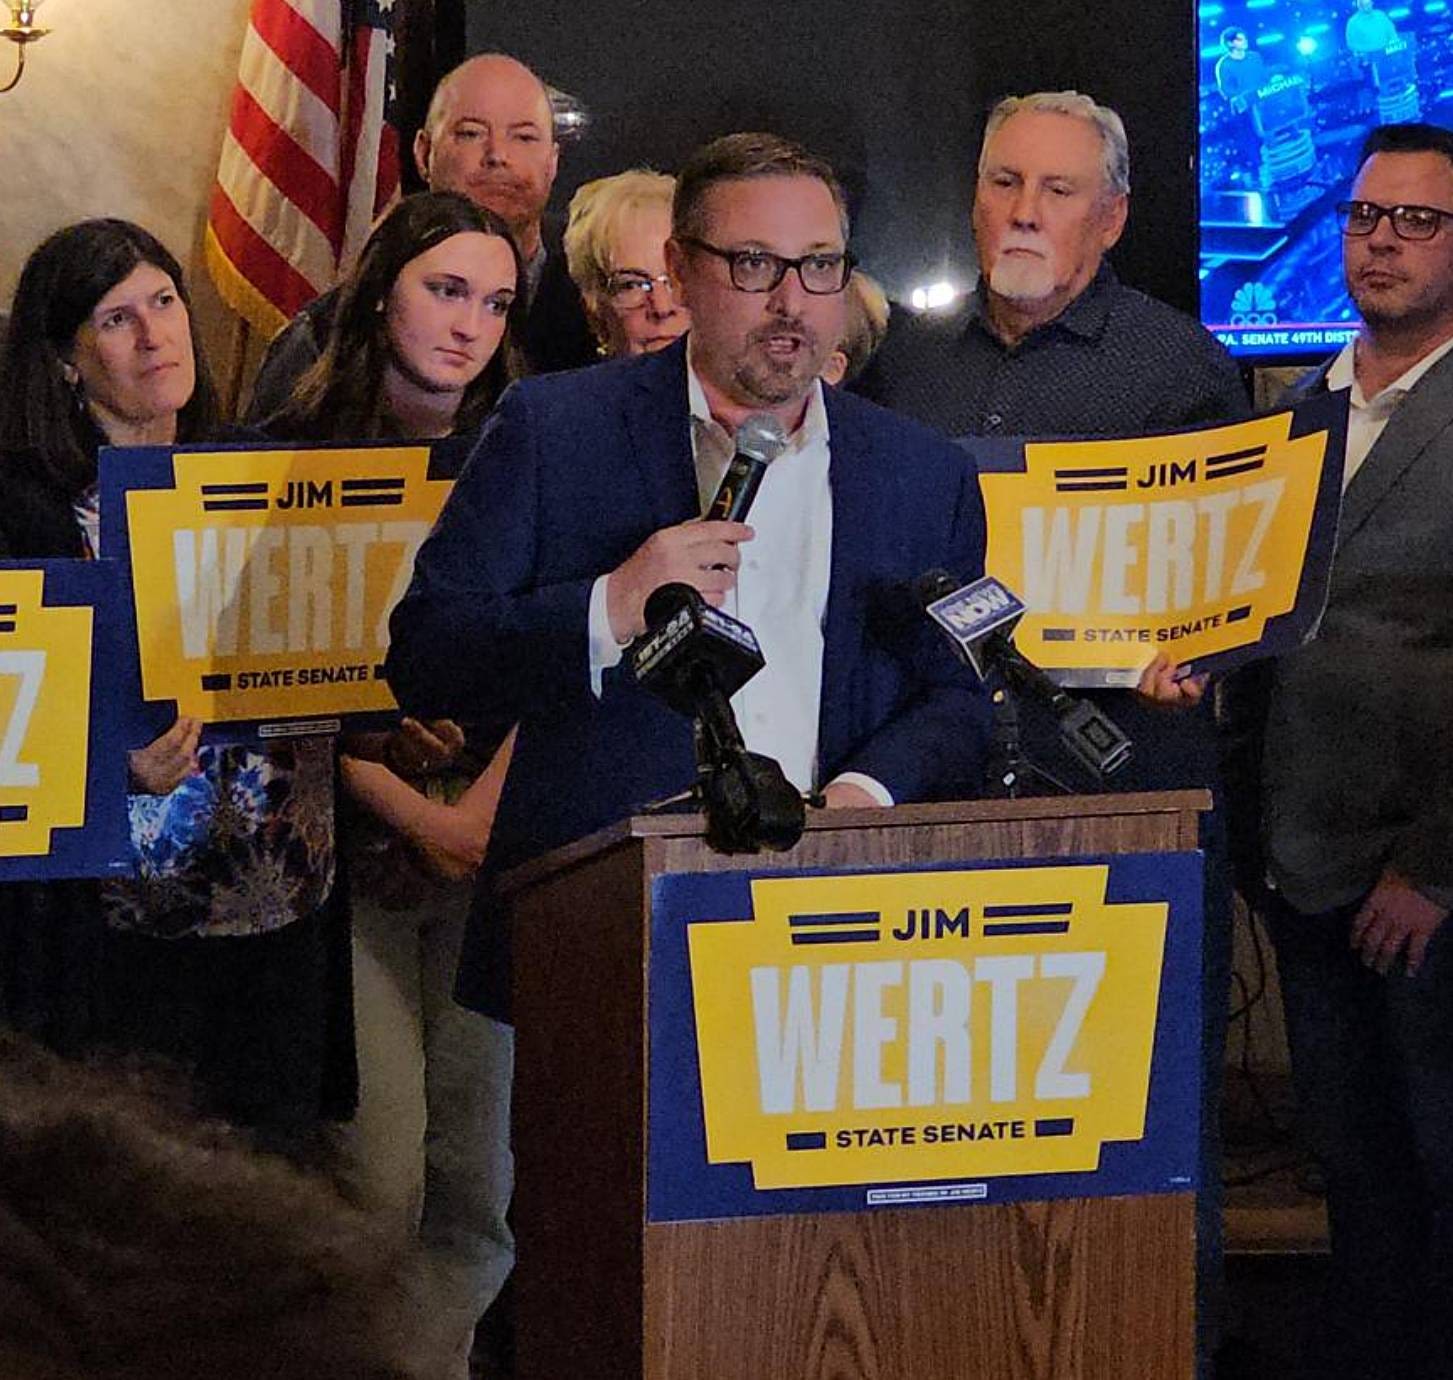 Erie County Primary election: Wertz wins state Senate bid; Bizzarro falls in treasurer race